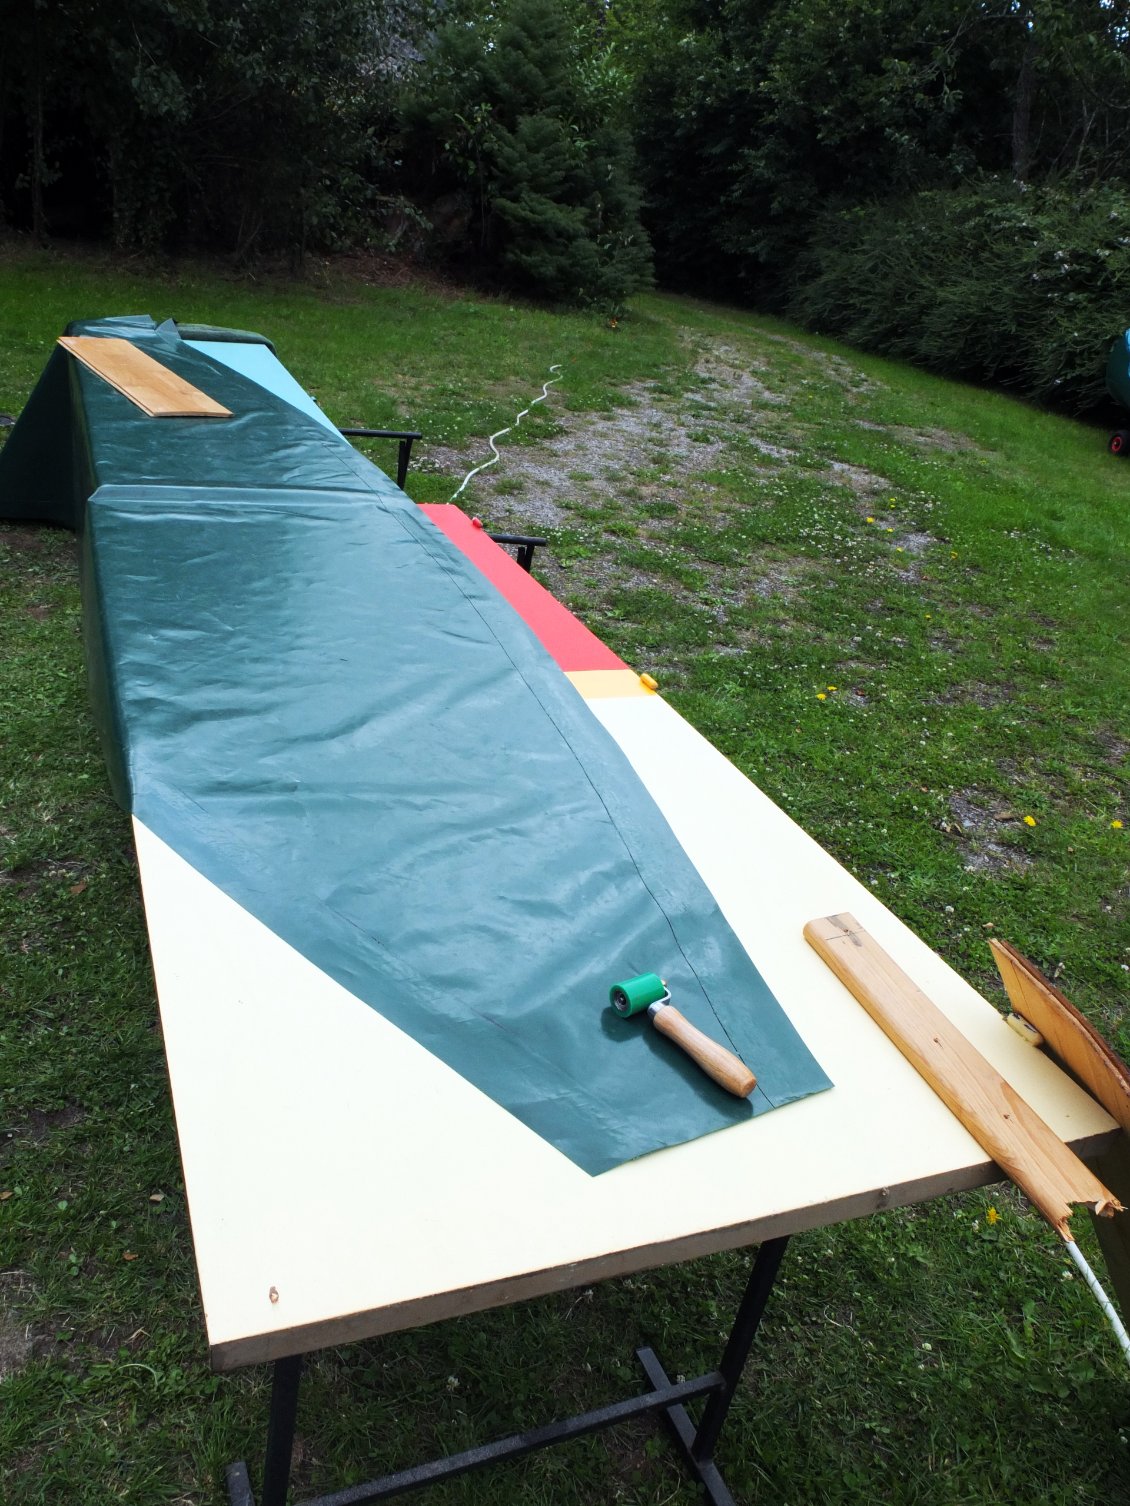 Il faut réaliser la bâche pour le canoé, elle sera immense et lourde : 5 m de long avec du pvc de 650 gr / M2.